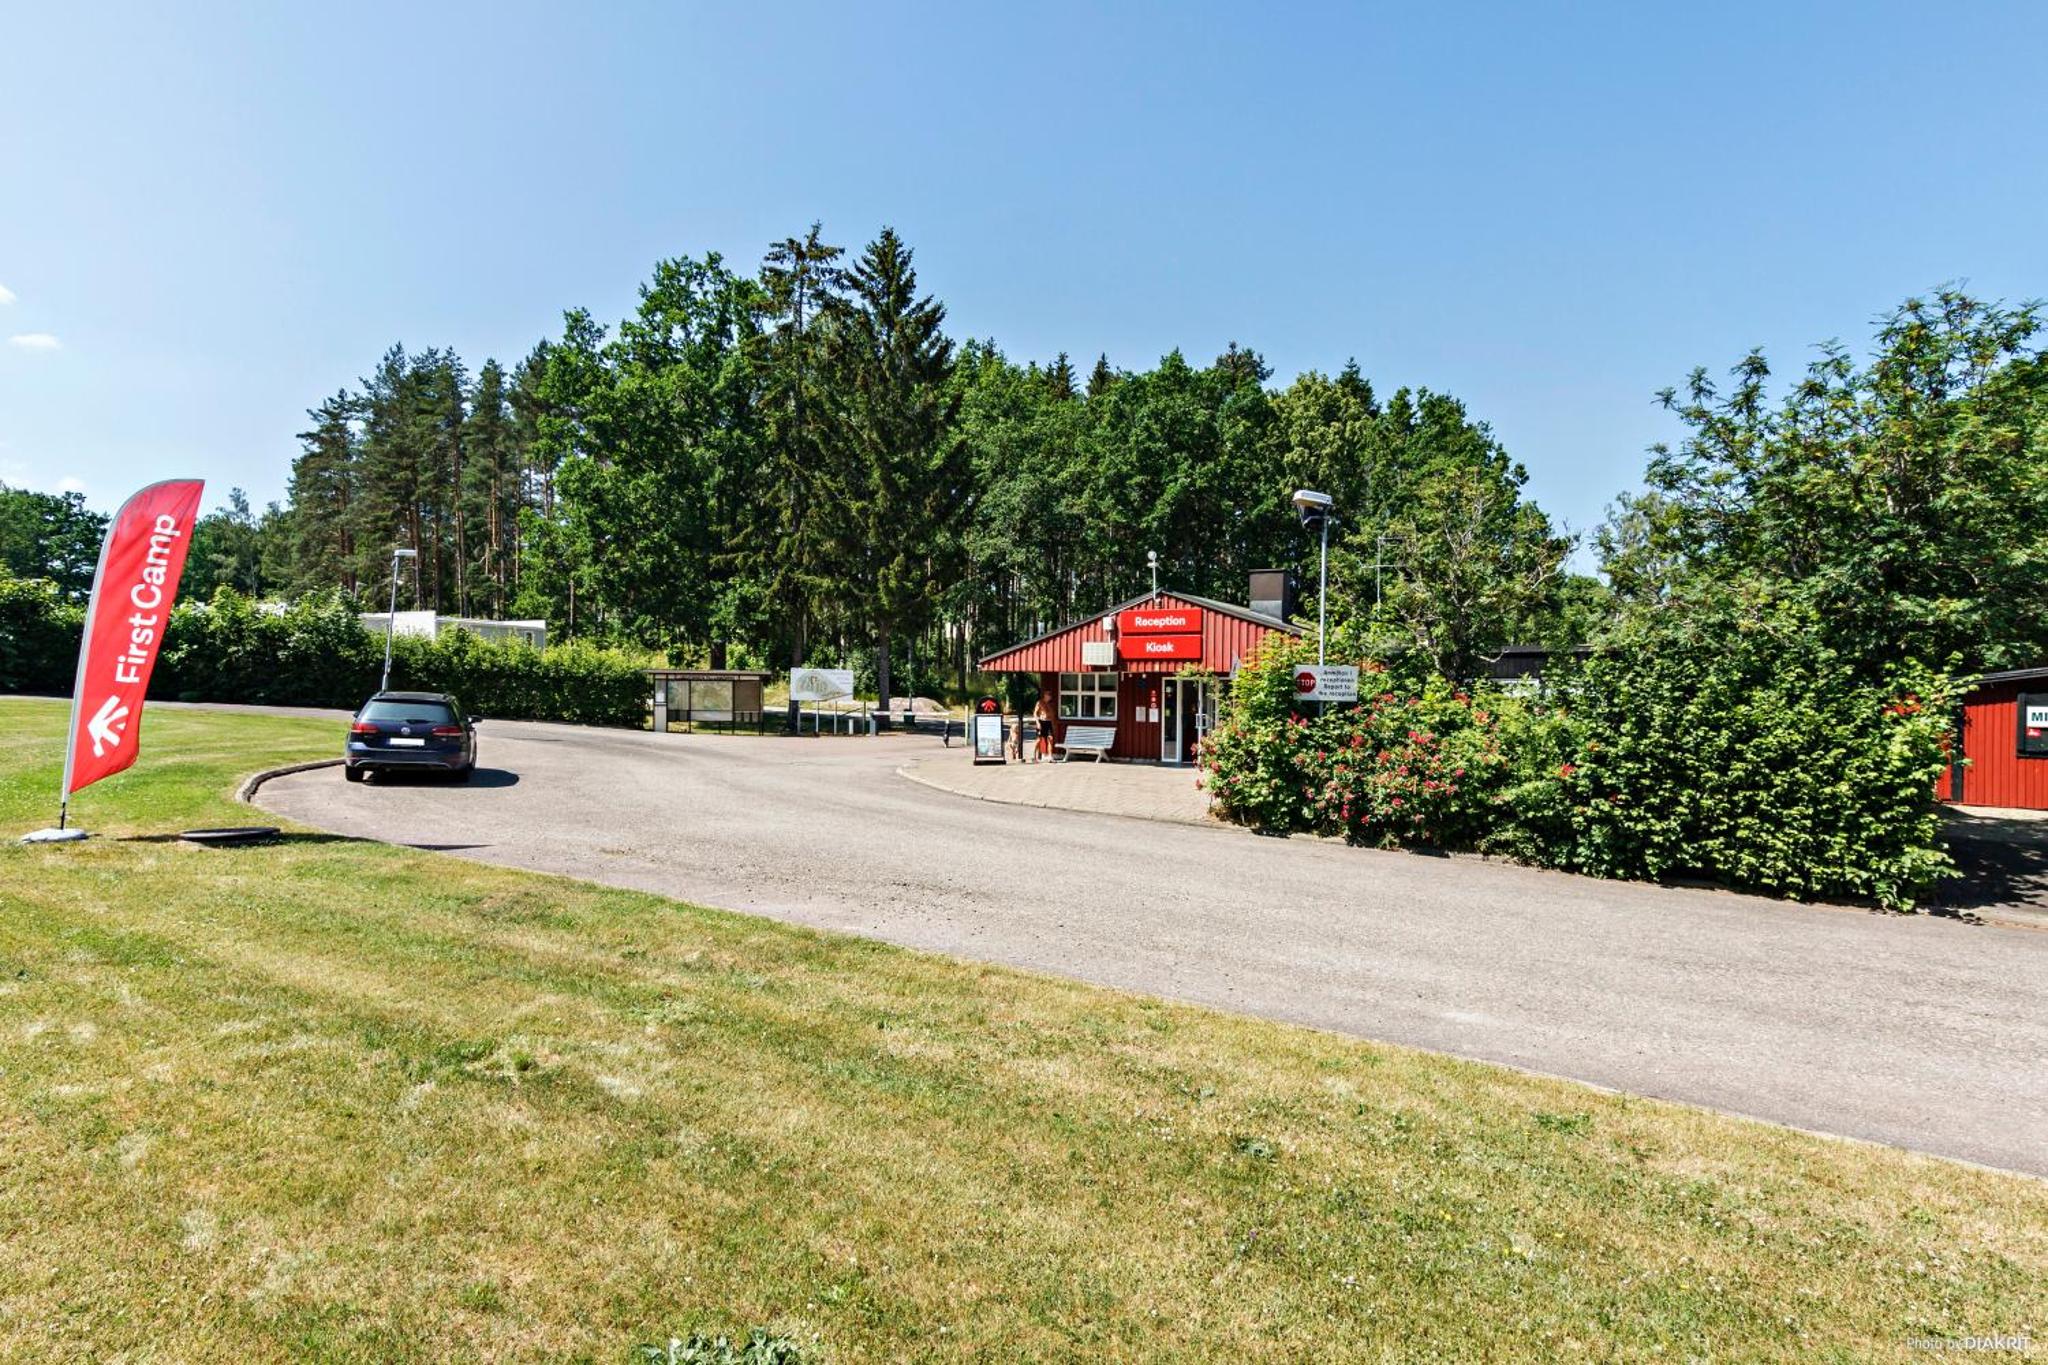 First Camp Glyttinge – Linköping